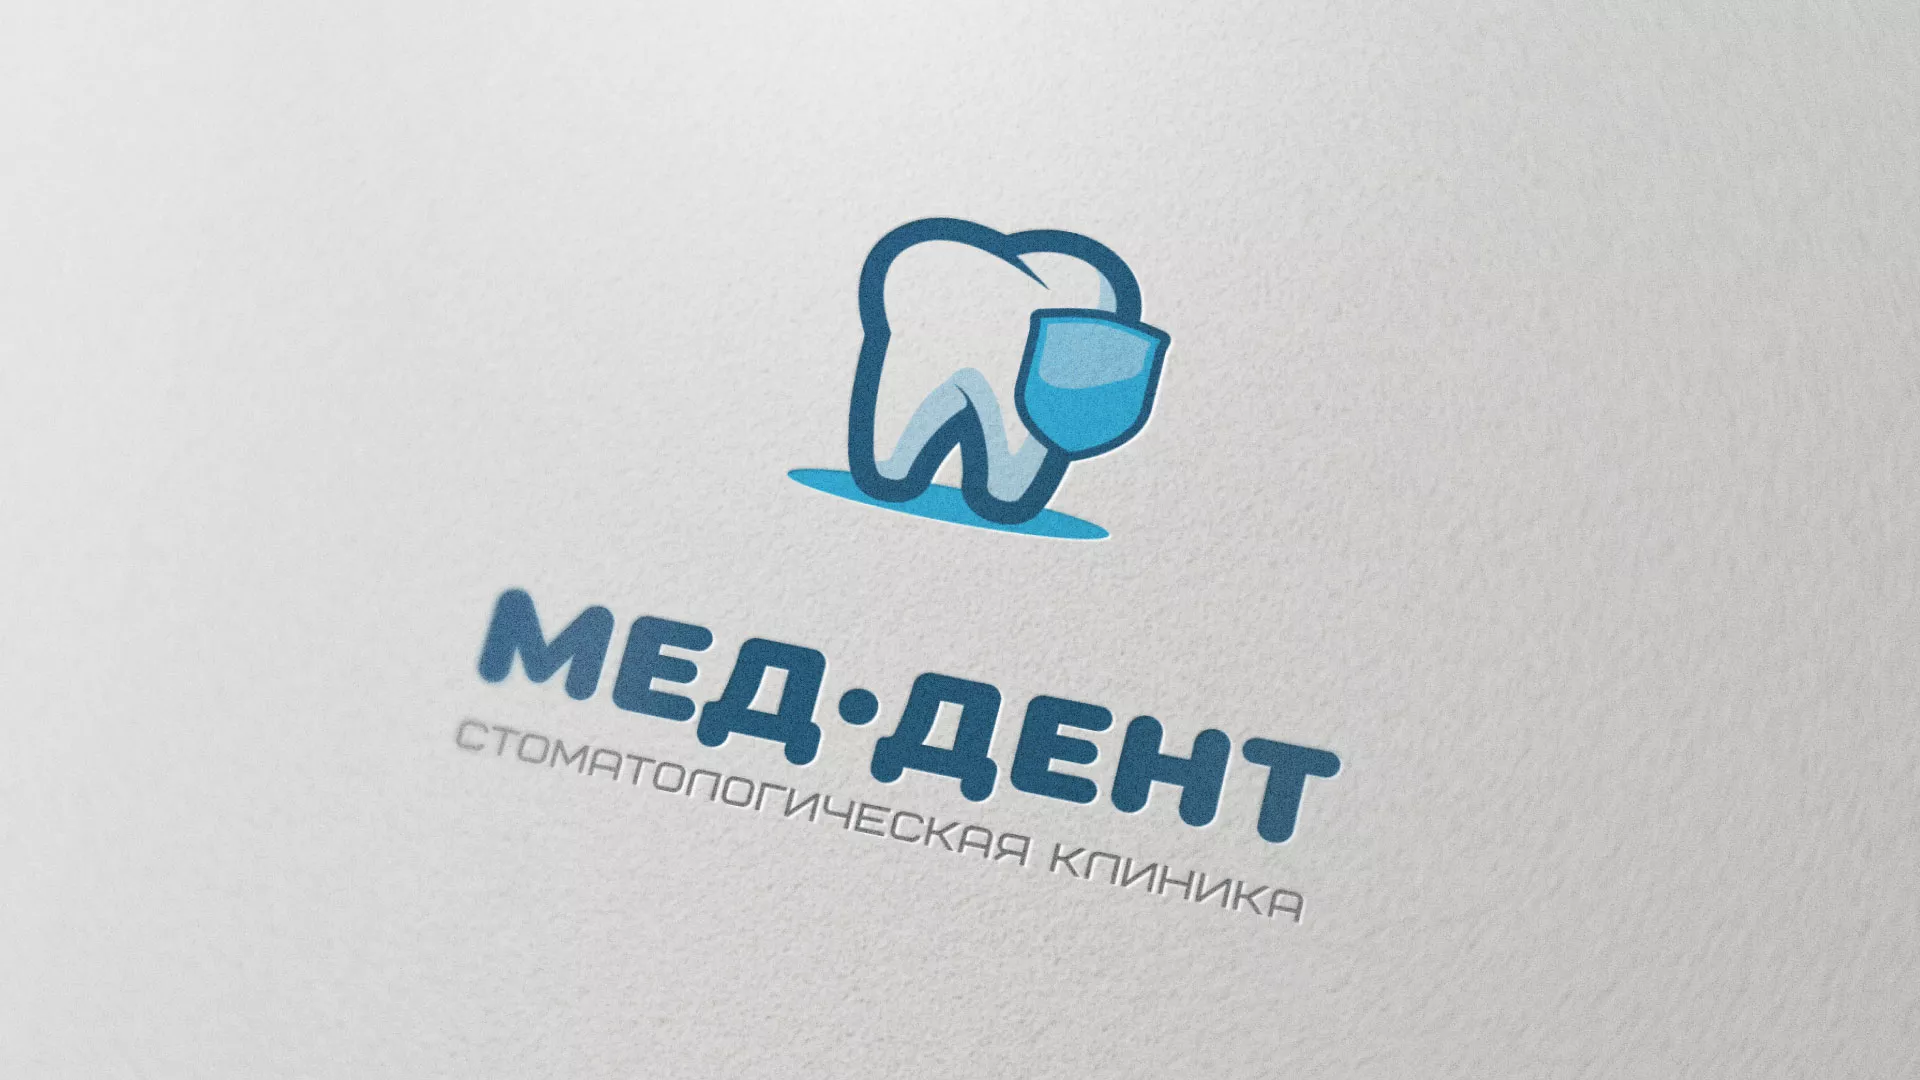 Разработка логотипа стоматологической клиники «МЕД-ДЕНТ» в Княгинино